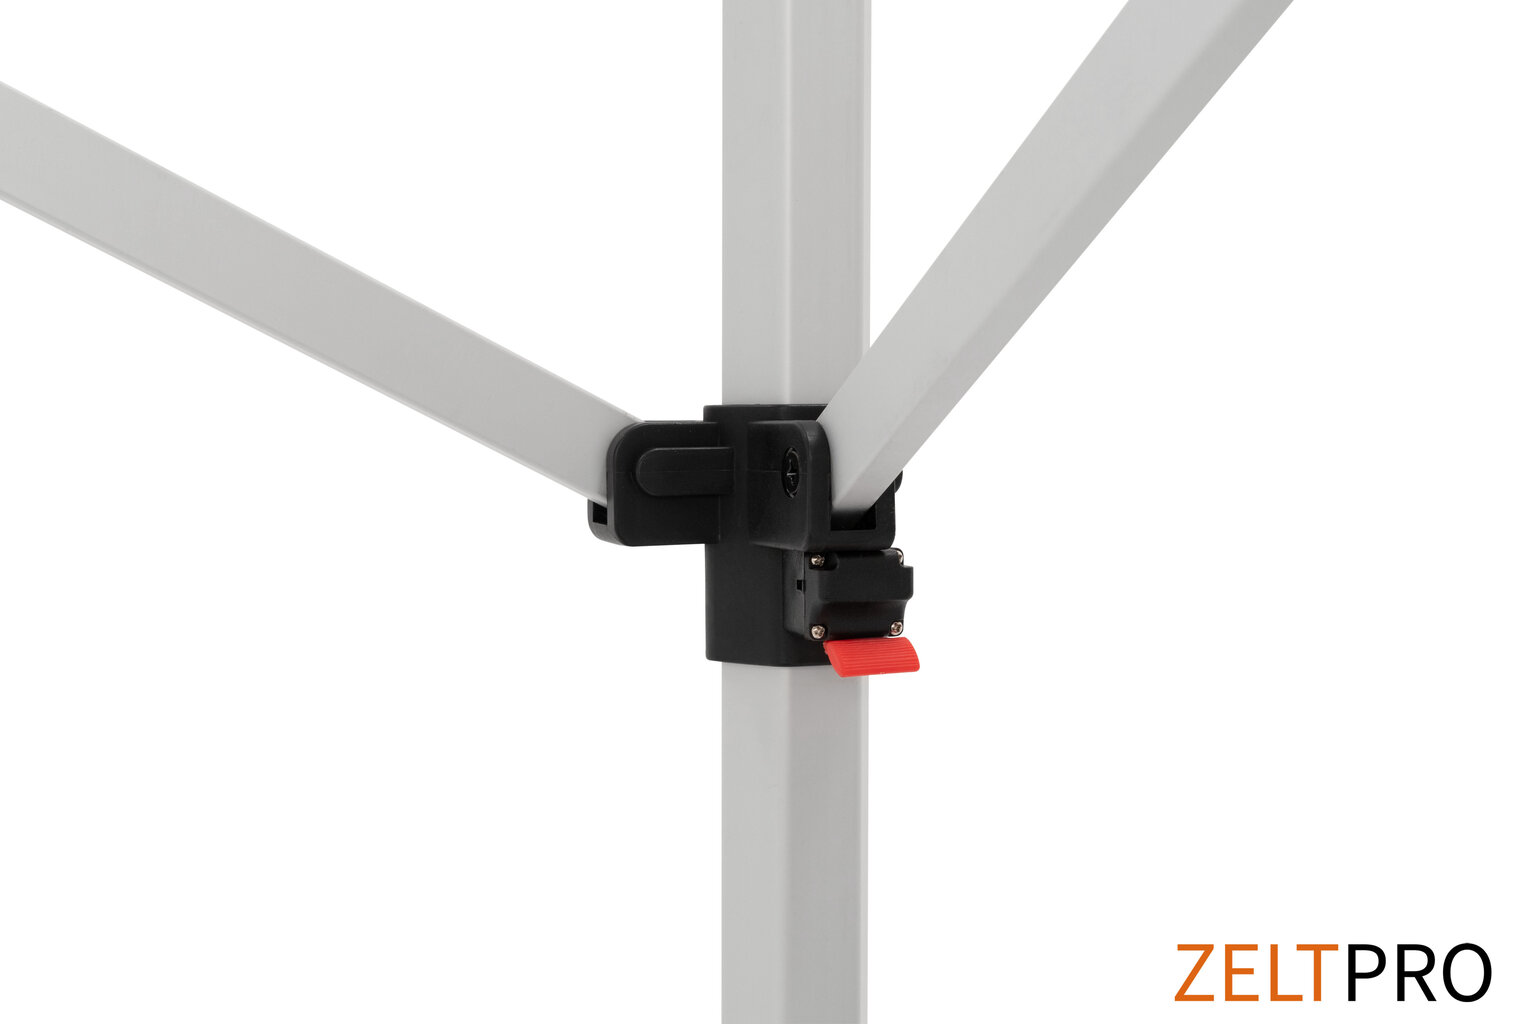 Pop-up telk 3x3 punane Zeltpro TITAAN hind ja info | Telgid | kaup24.ee